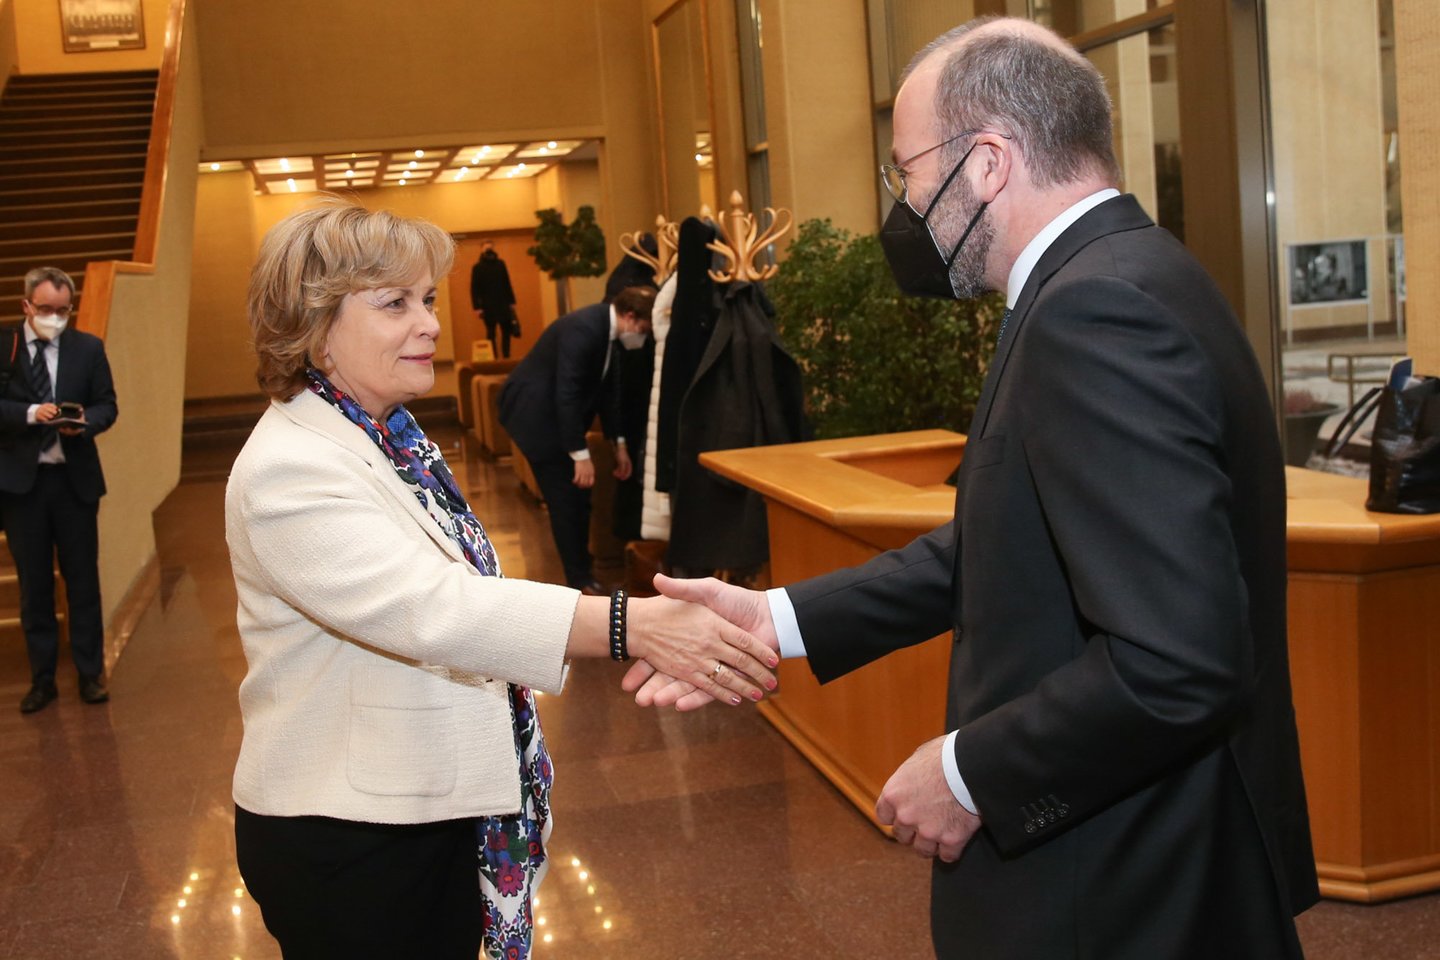 Europos liaudies partijos frakcijos vadovas Manfredas Weberis atvyko į Lietuvą solidarumo vizito.<br>R.Danisevičiaus nuotr.